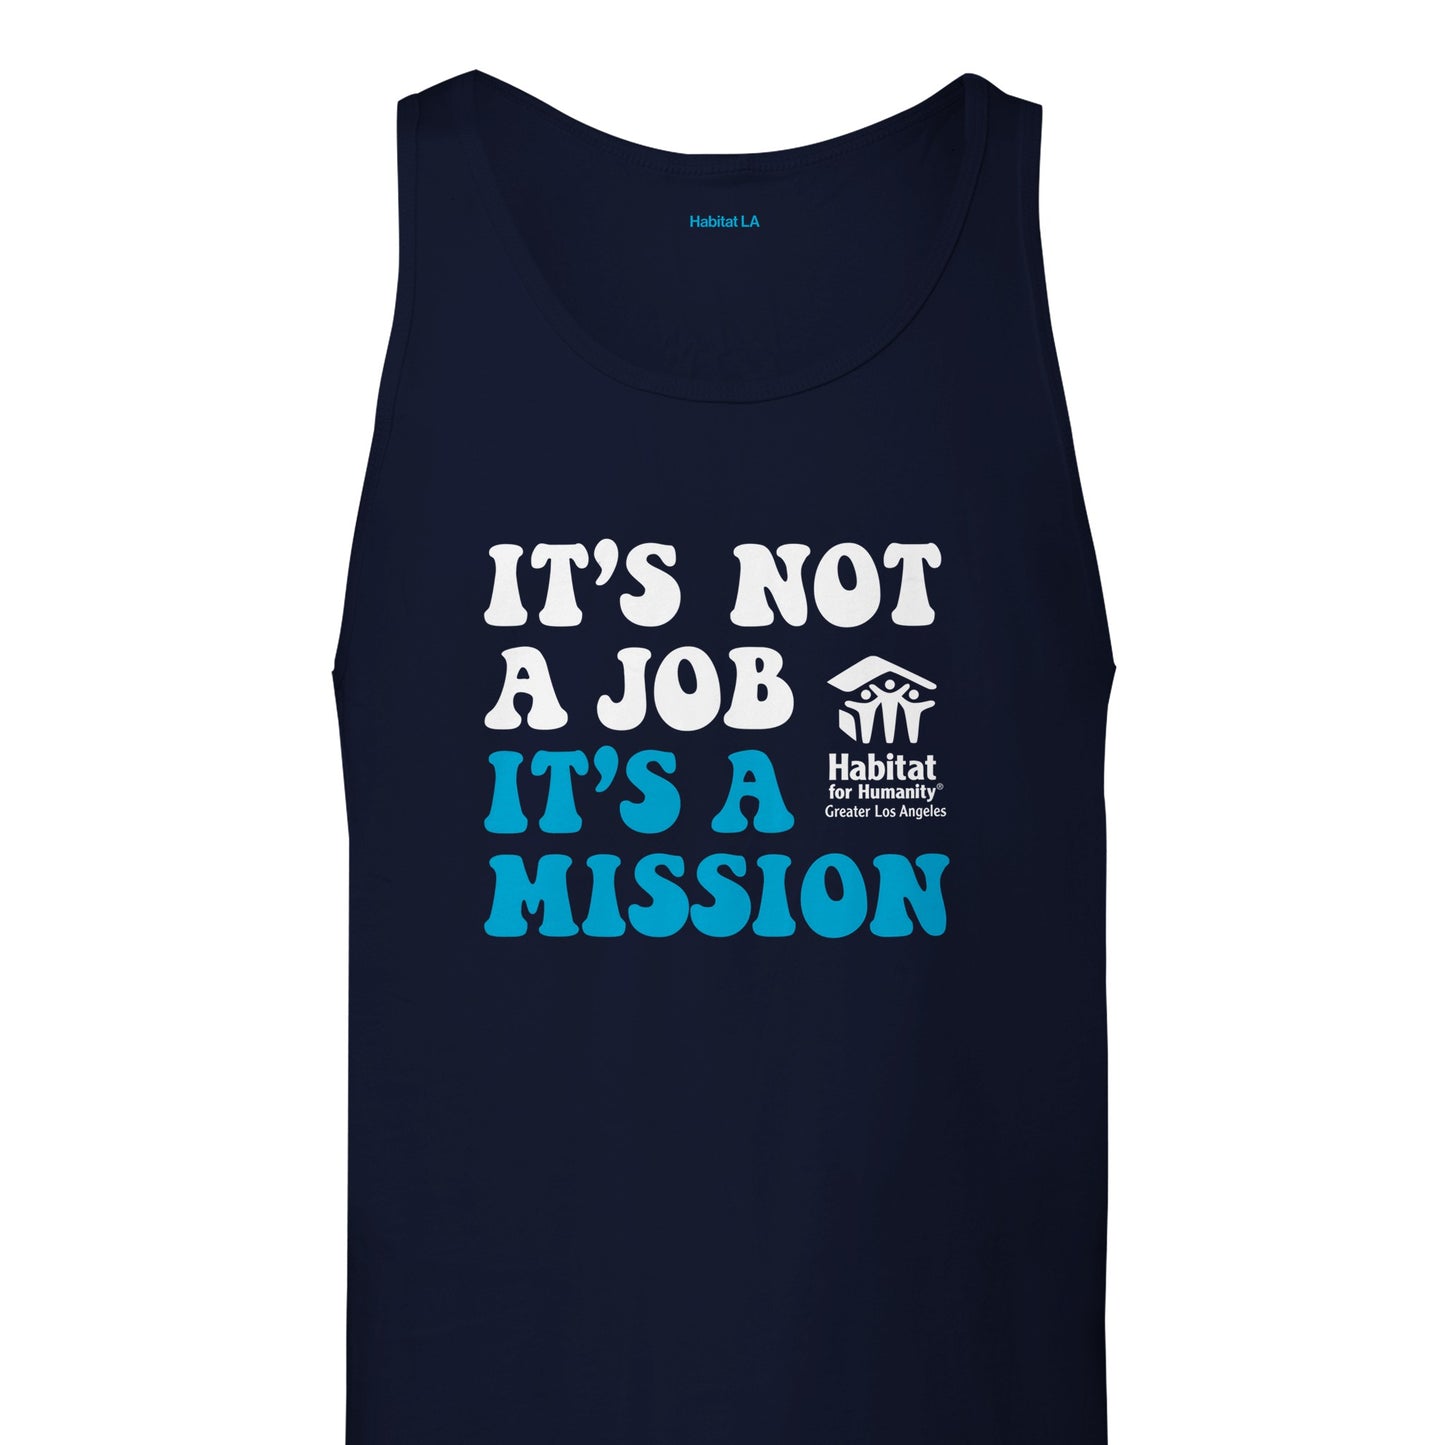 Camiseta sin mangas unisex premium "Es una misión"